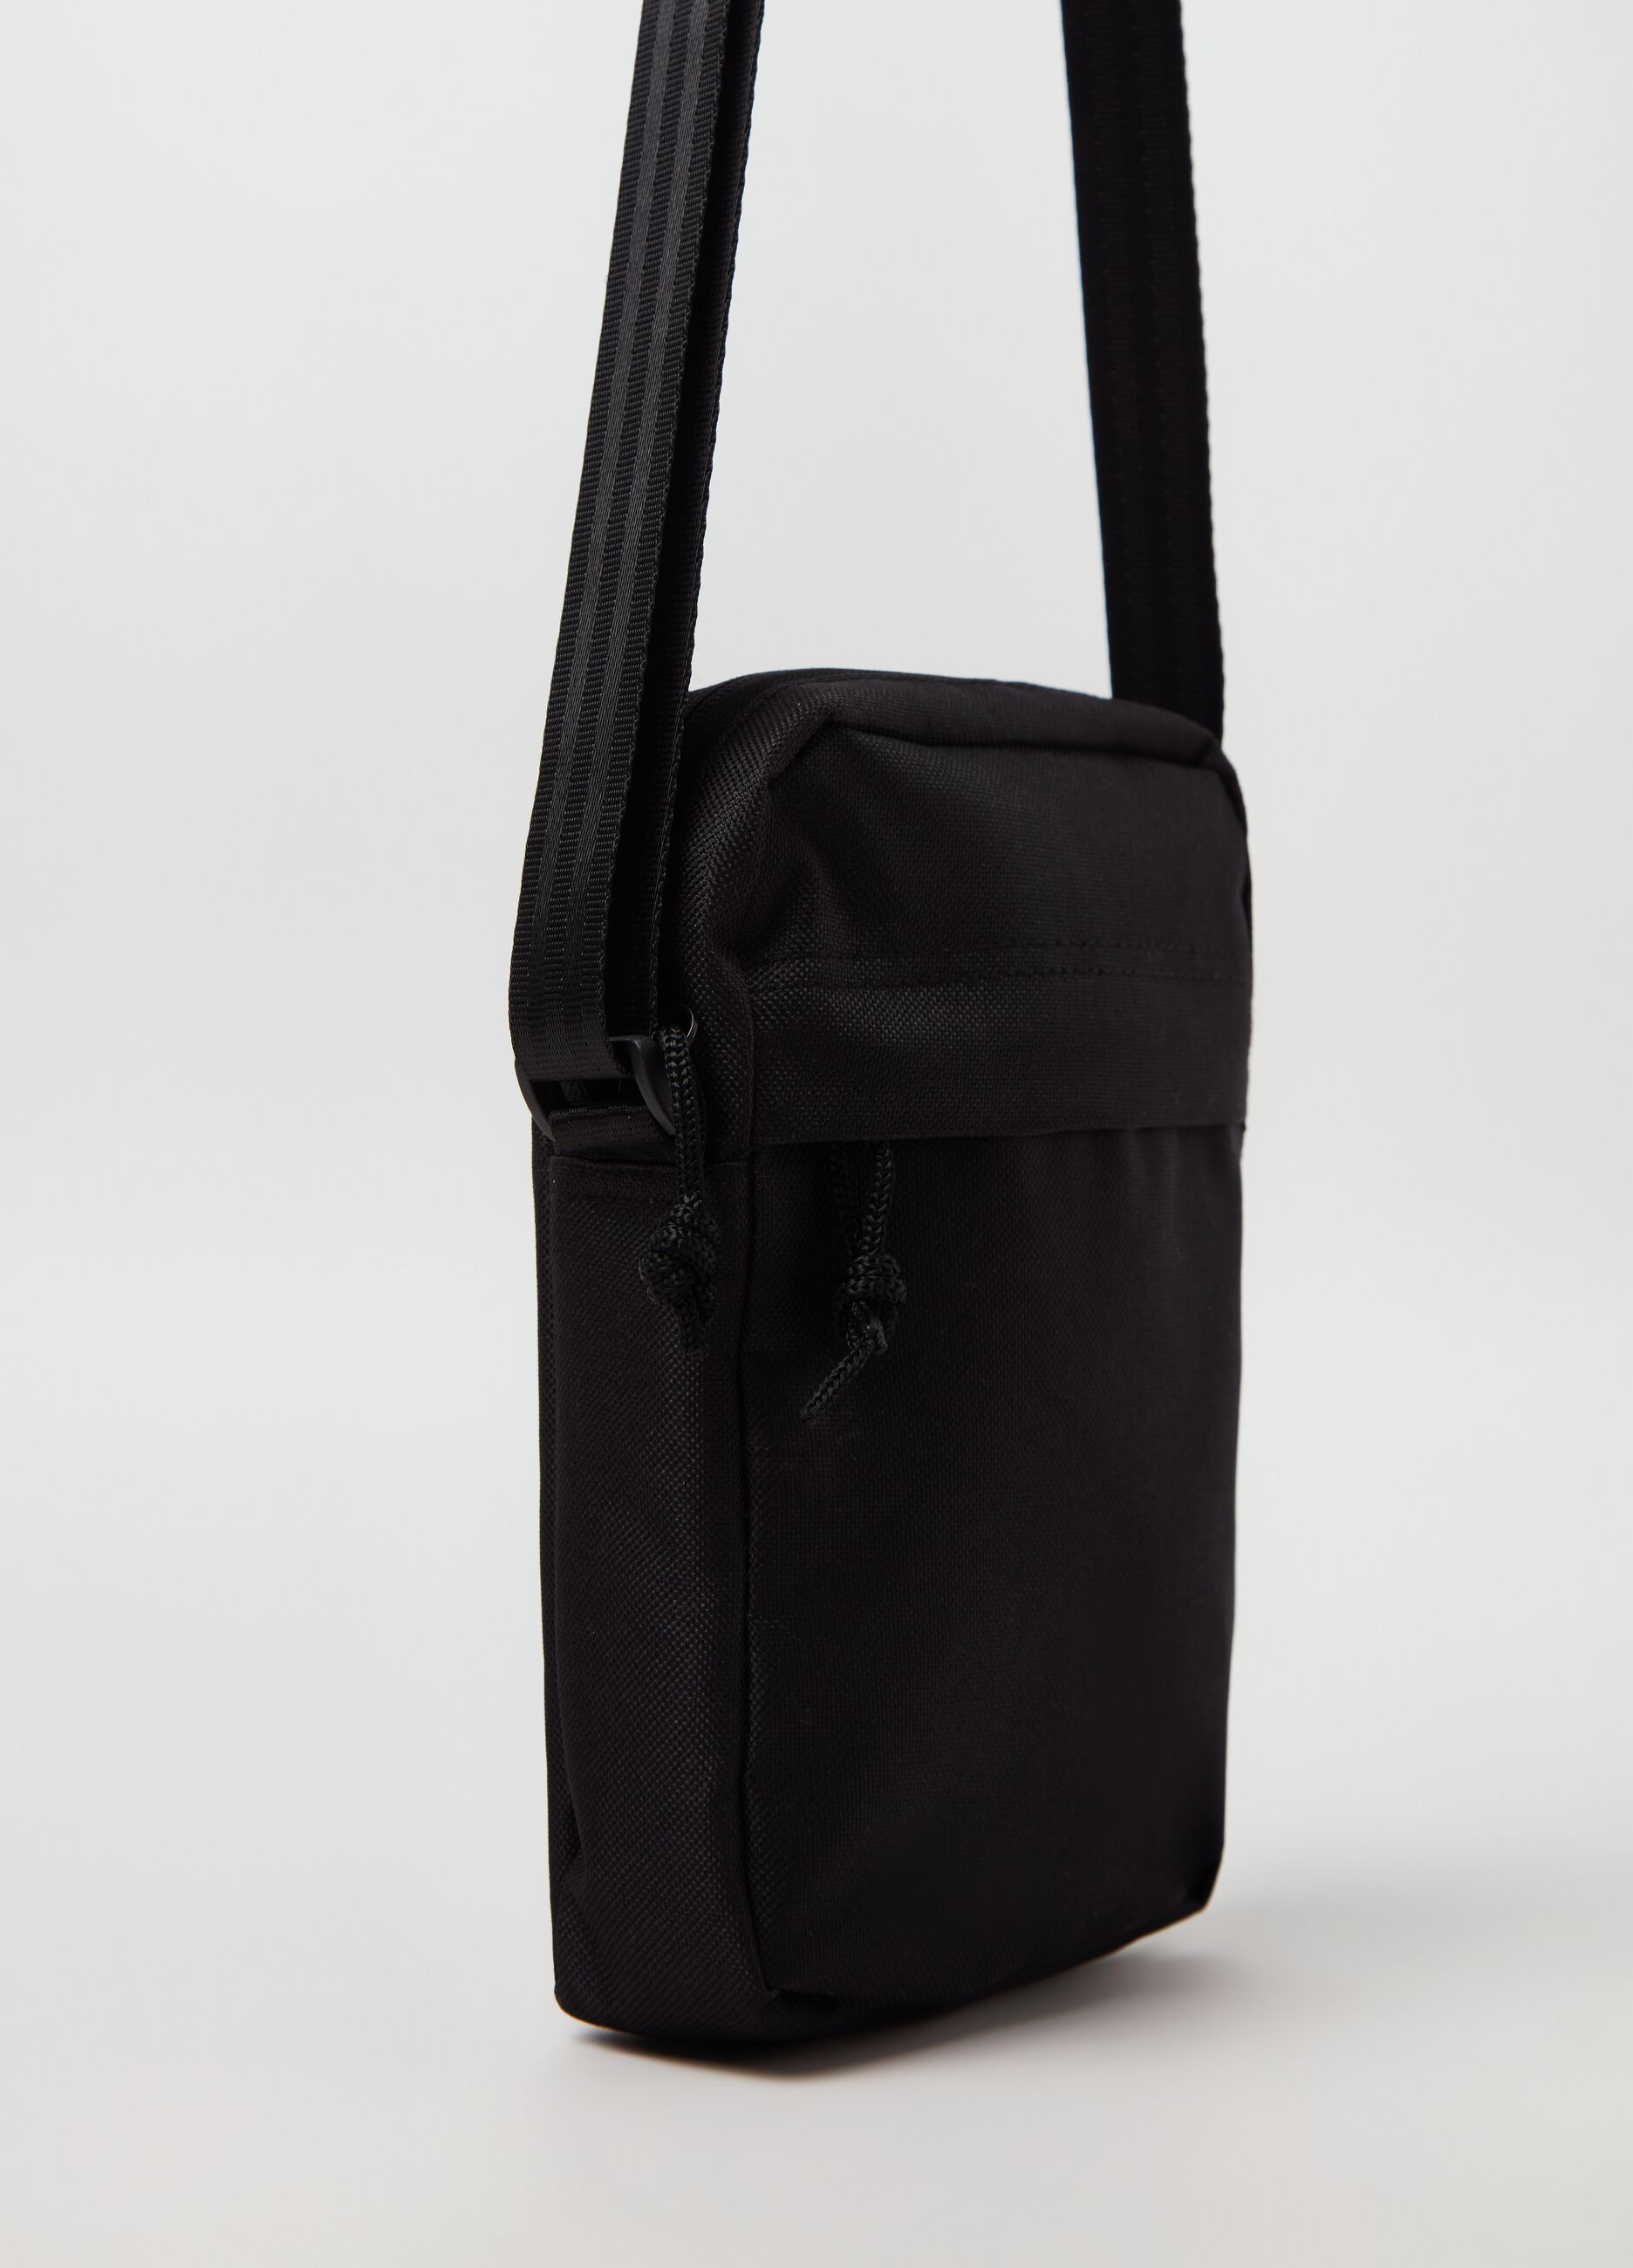 Bag with shoulder strap.